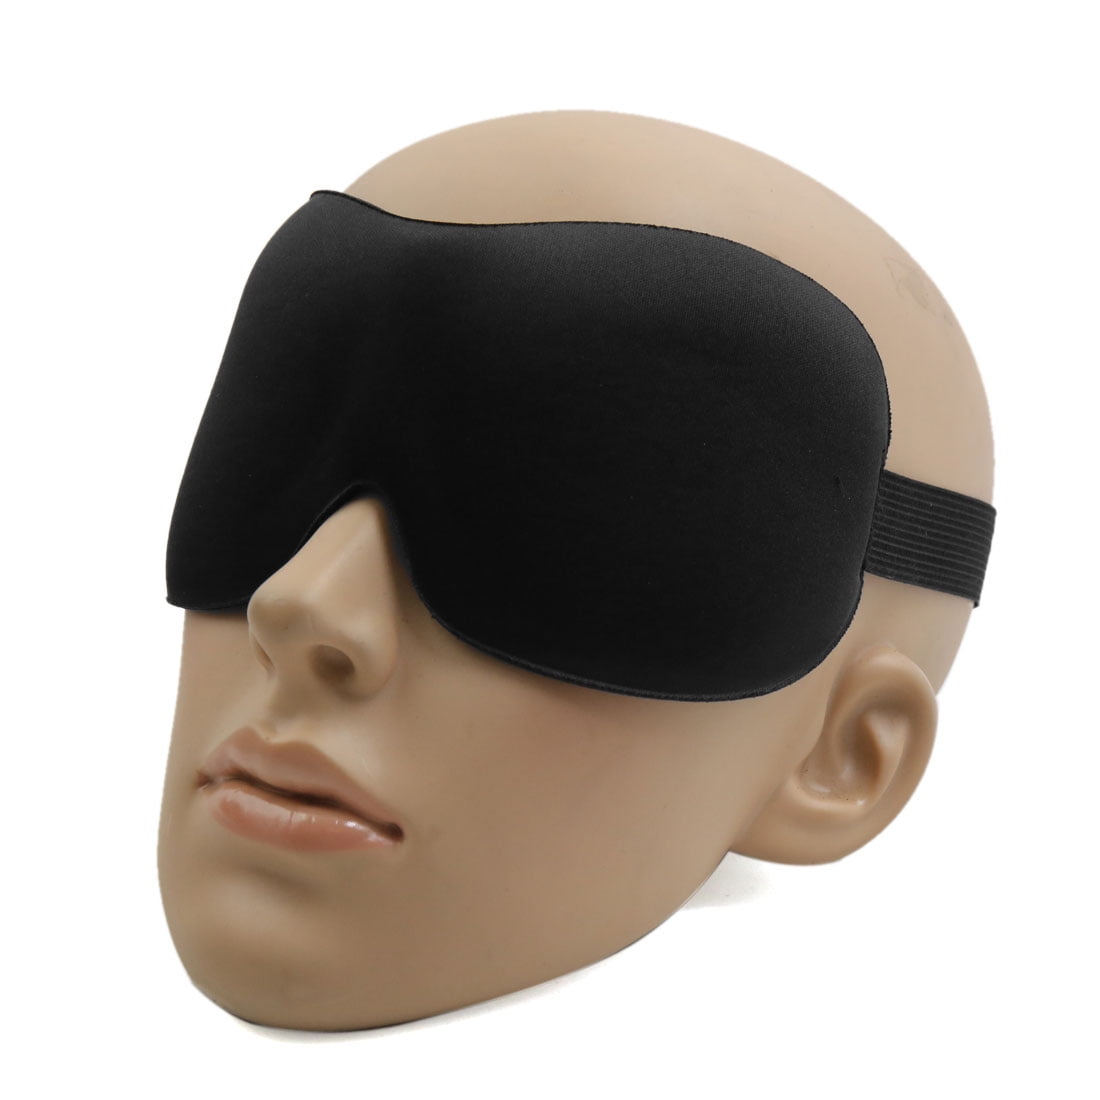 eye cover for sleeping amazon